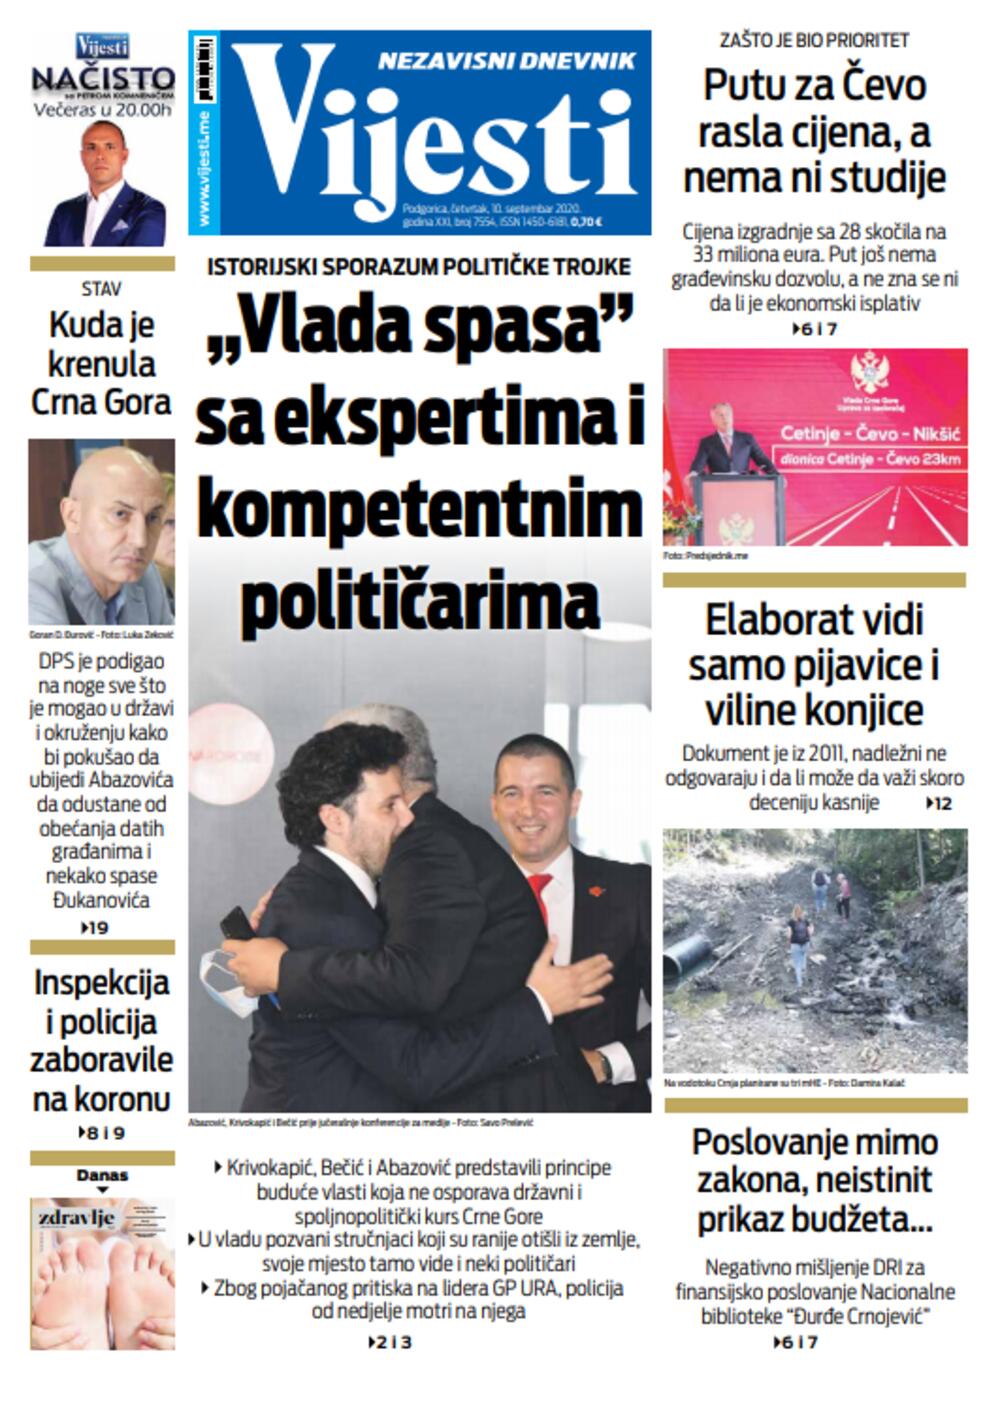 Naslovna strana "Vijesti" za deseti septembar, Foto: Vijesti